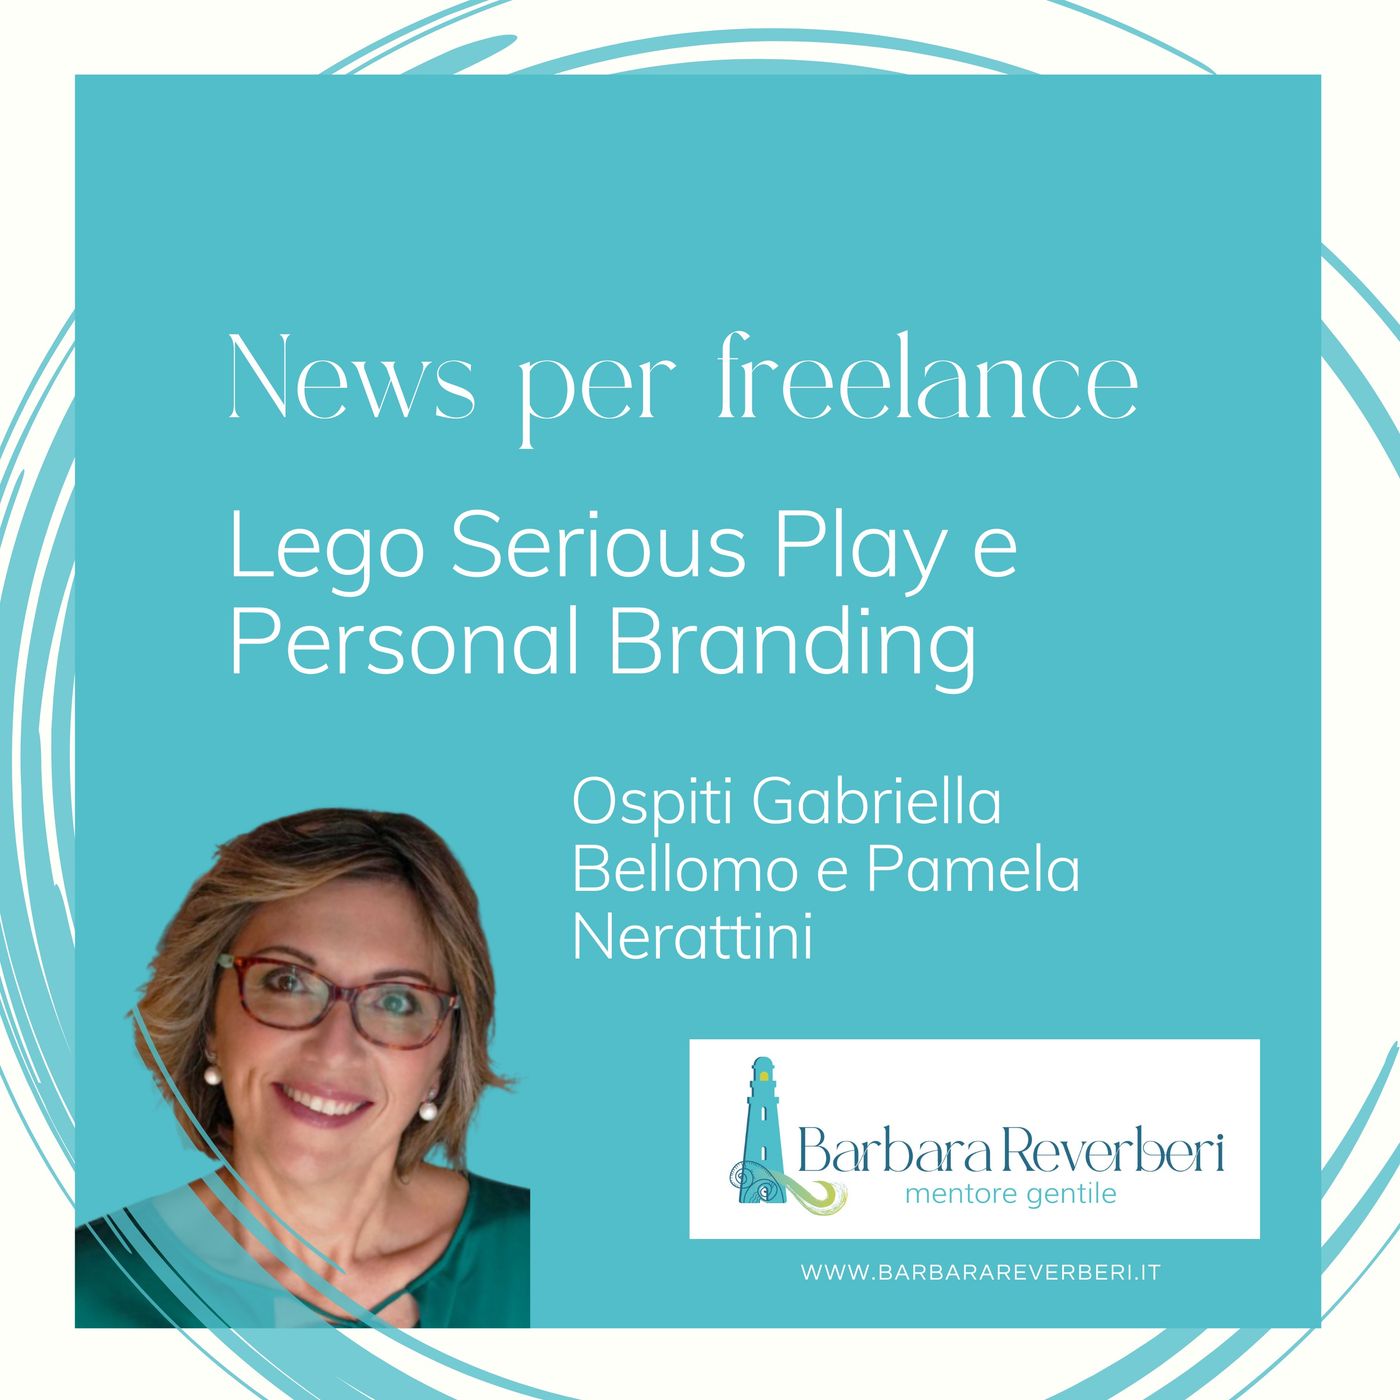 Lego Serious Play e Personal Branding con Gabriella Pamela e Silvia